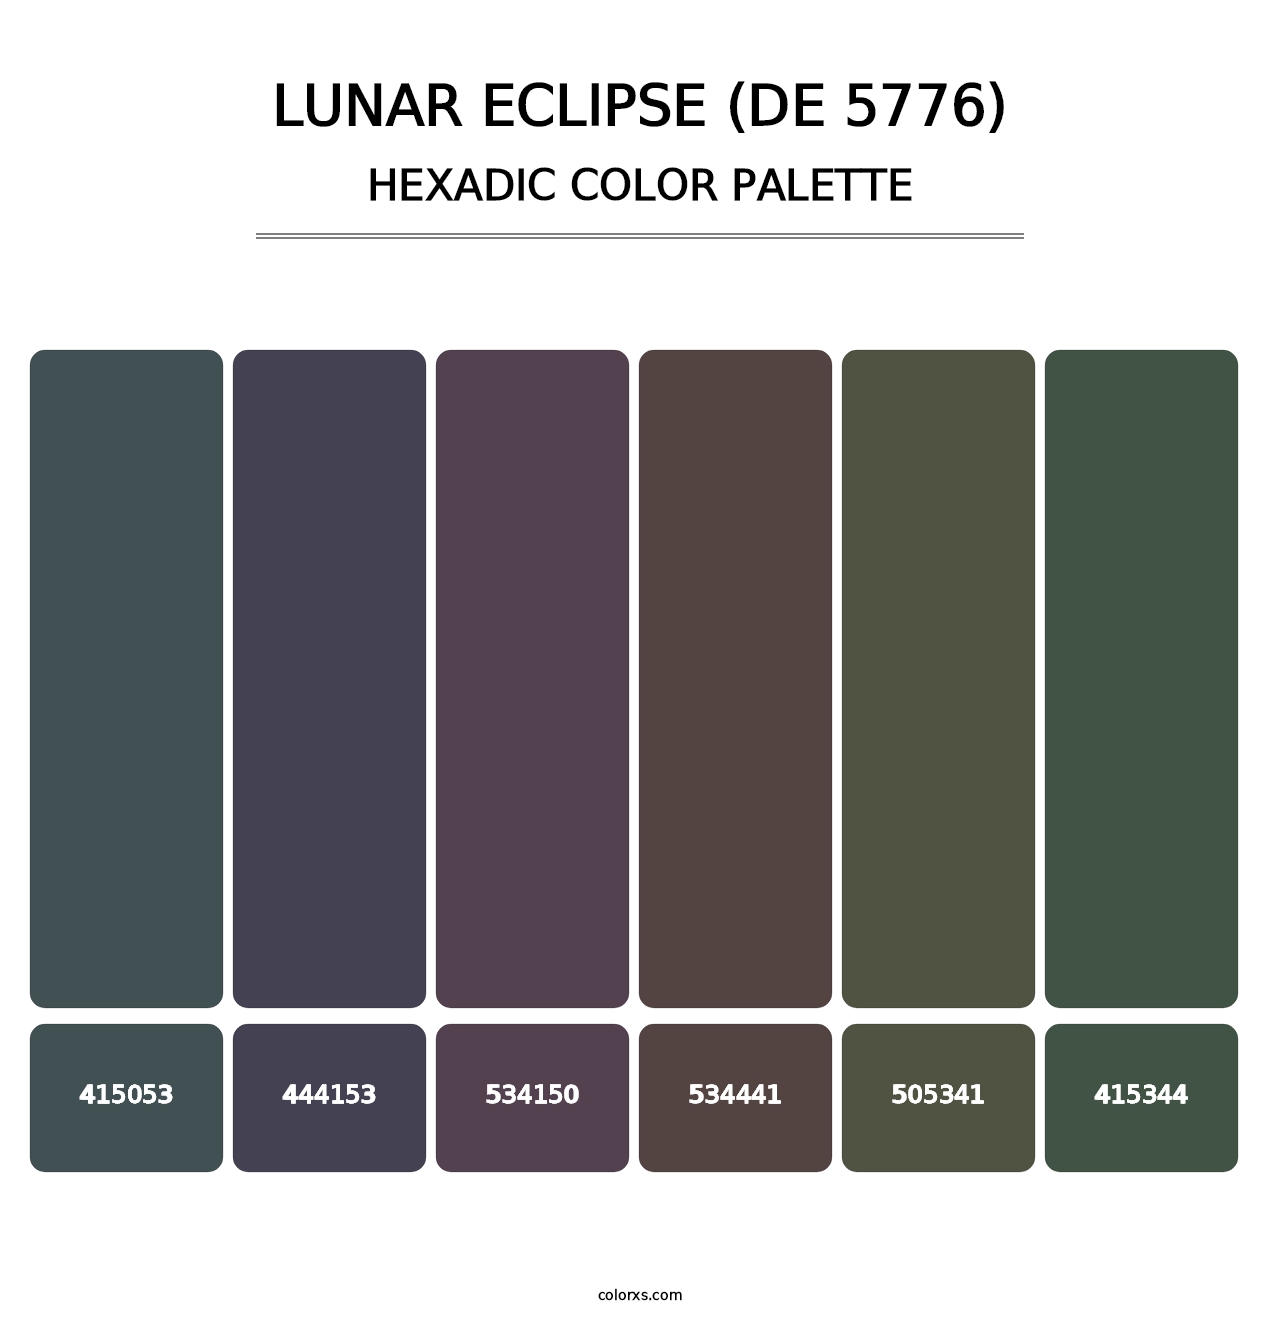 Lunar Eclipse (DE 5776) - Hexadic Color Palette